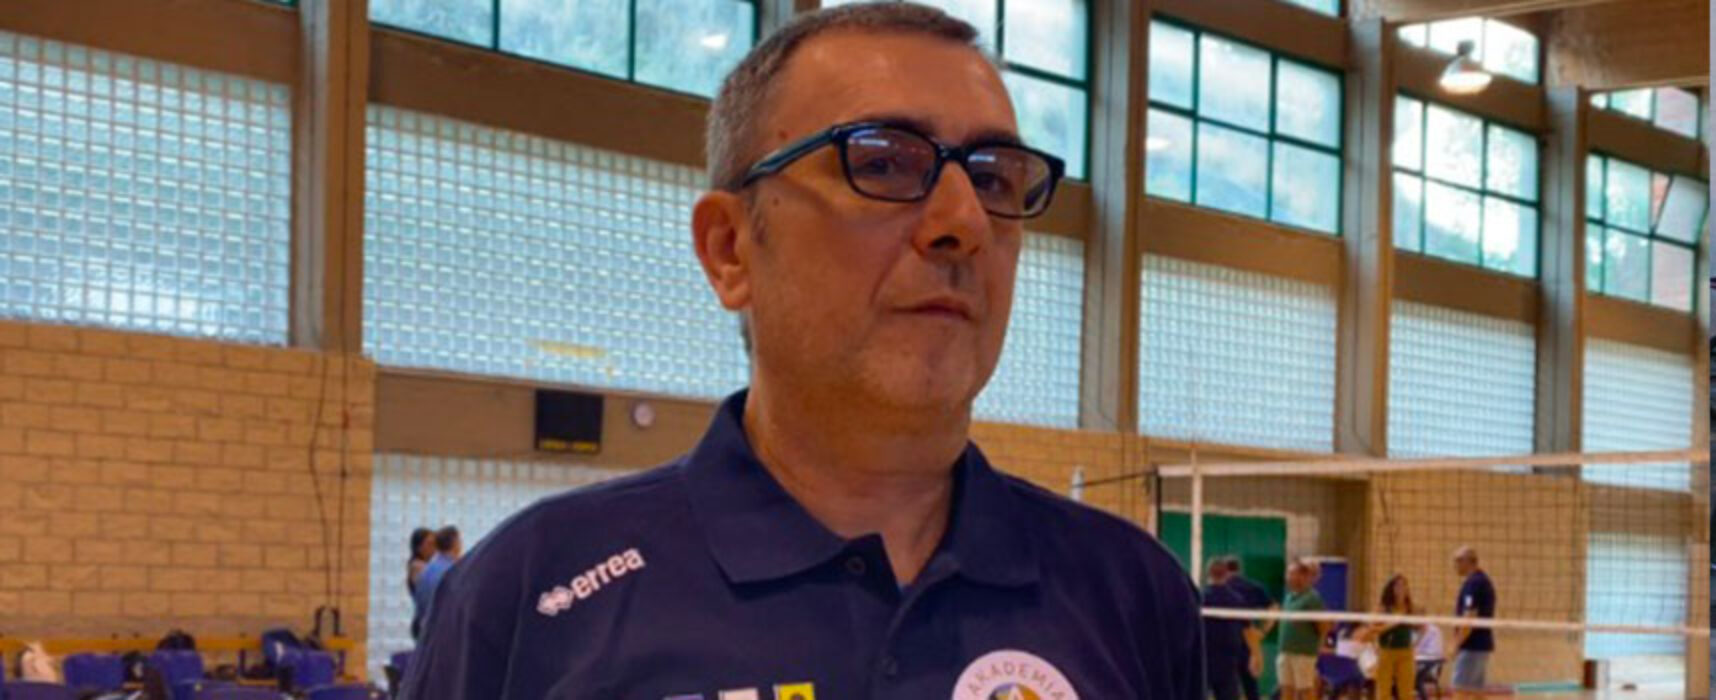 Star Volley Bisceglie, Marco Breviglieri è il nuovo tecnico